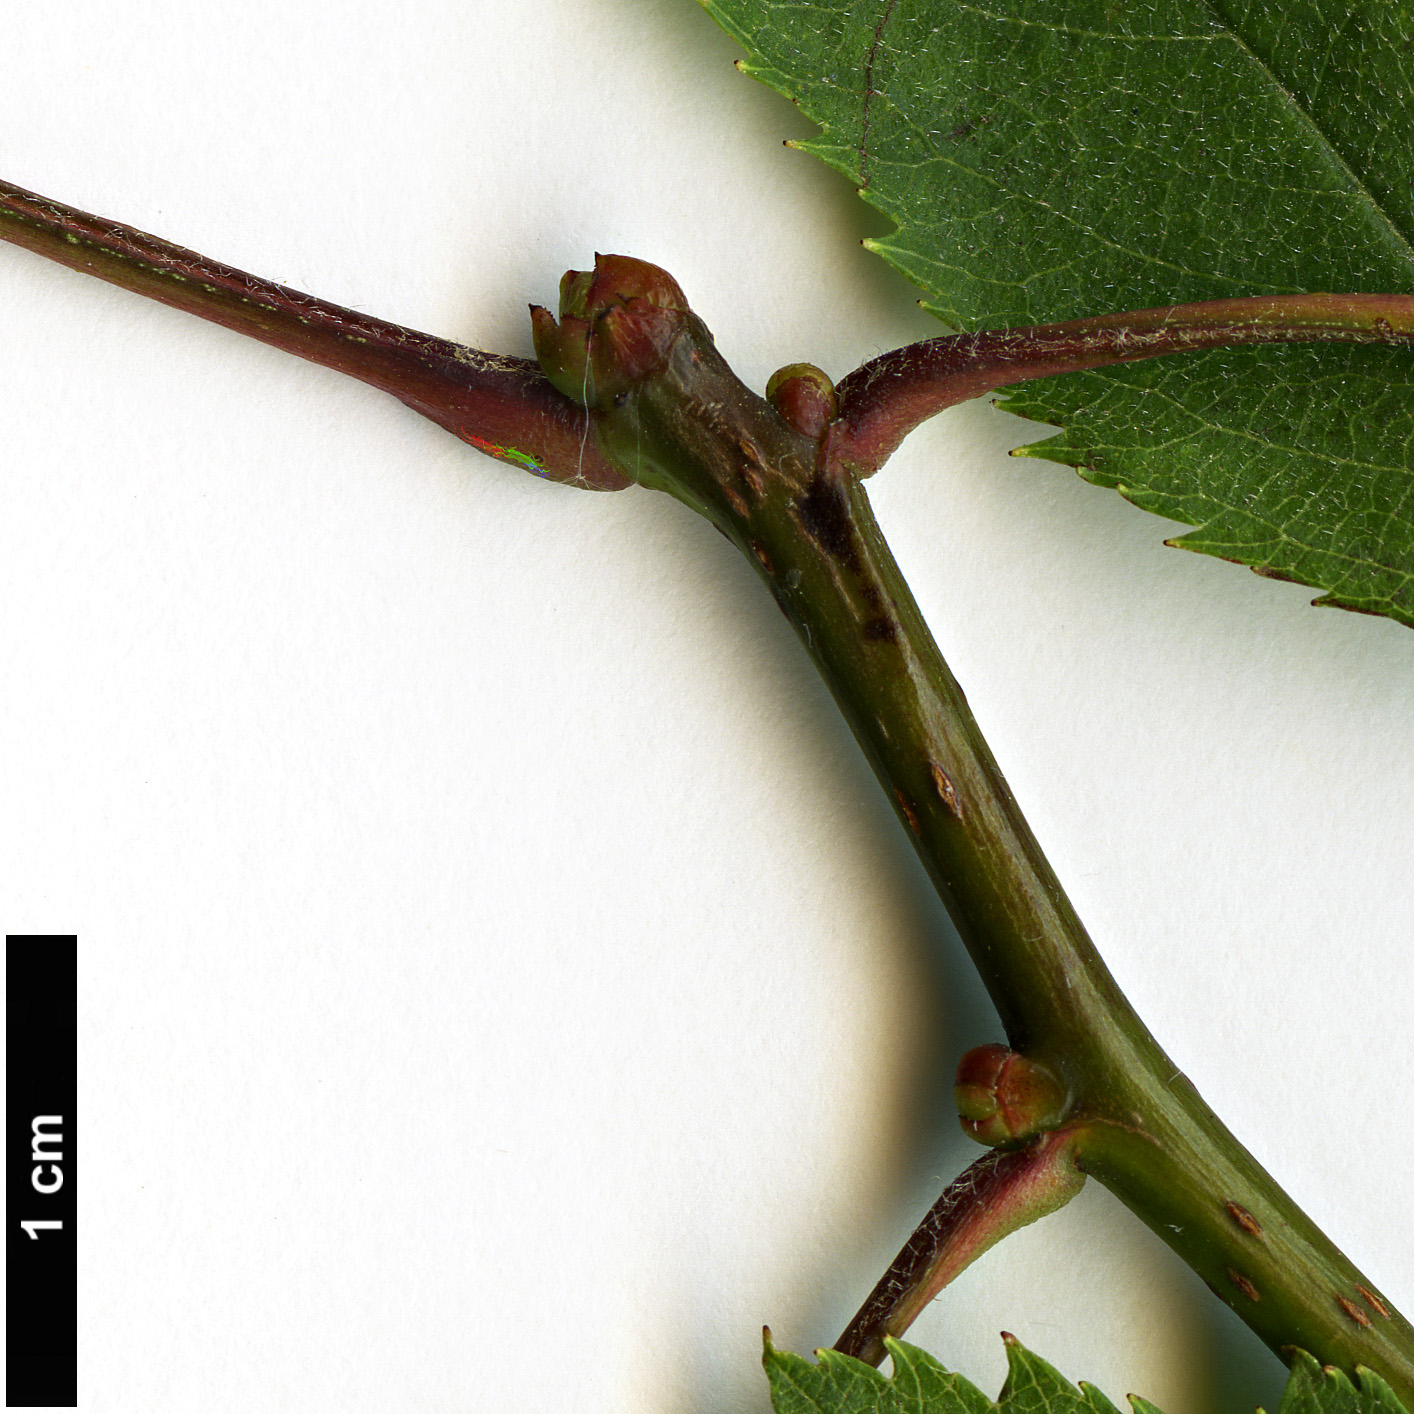 High resolution image: Family: Rosaceae - Genus: Crataegus - Taxon: crassicarpa